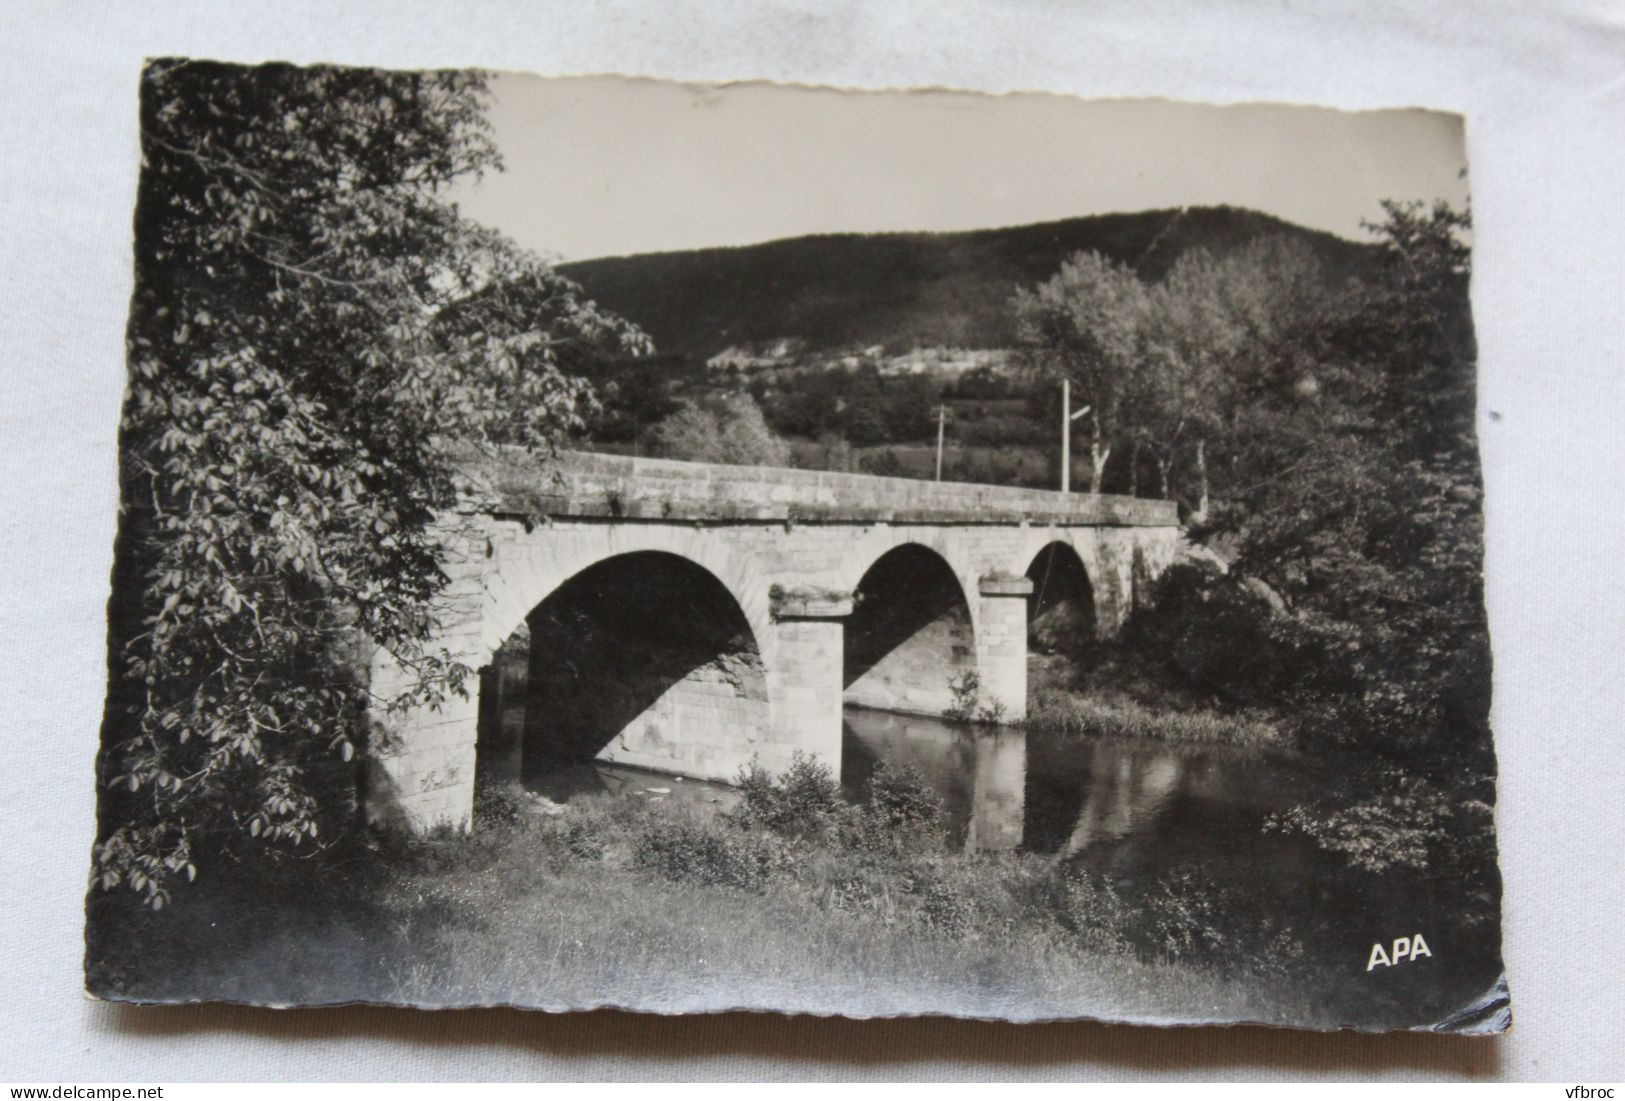 Cpm 1959, Chanac, Pont Neuf Sur Le Lot, Lozère 48 - Chanac